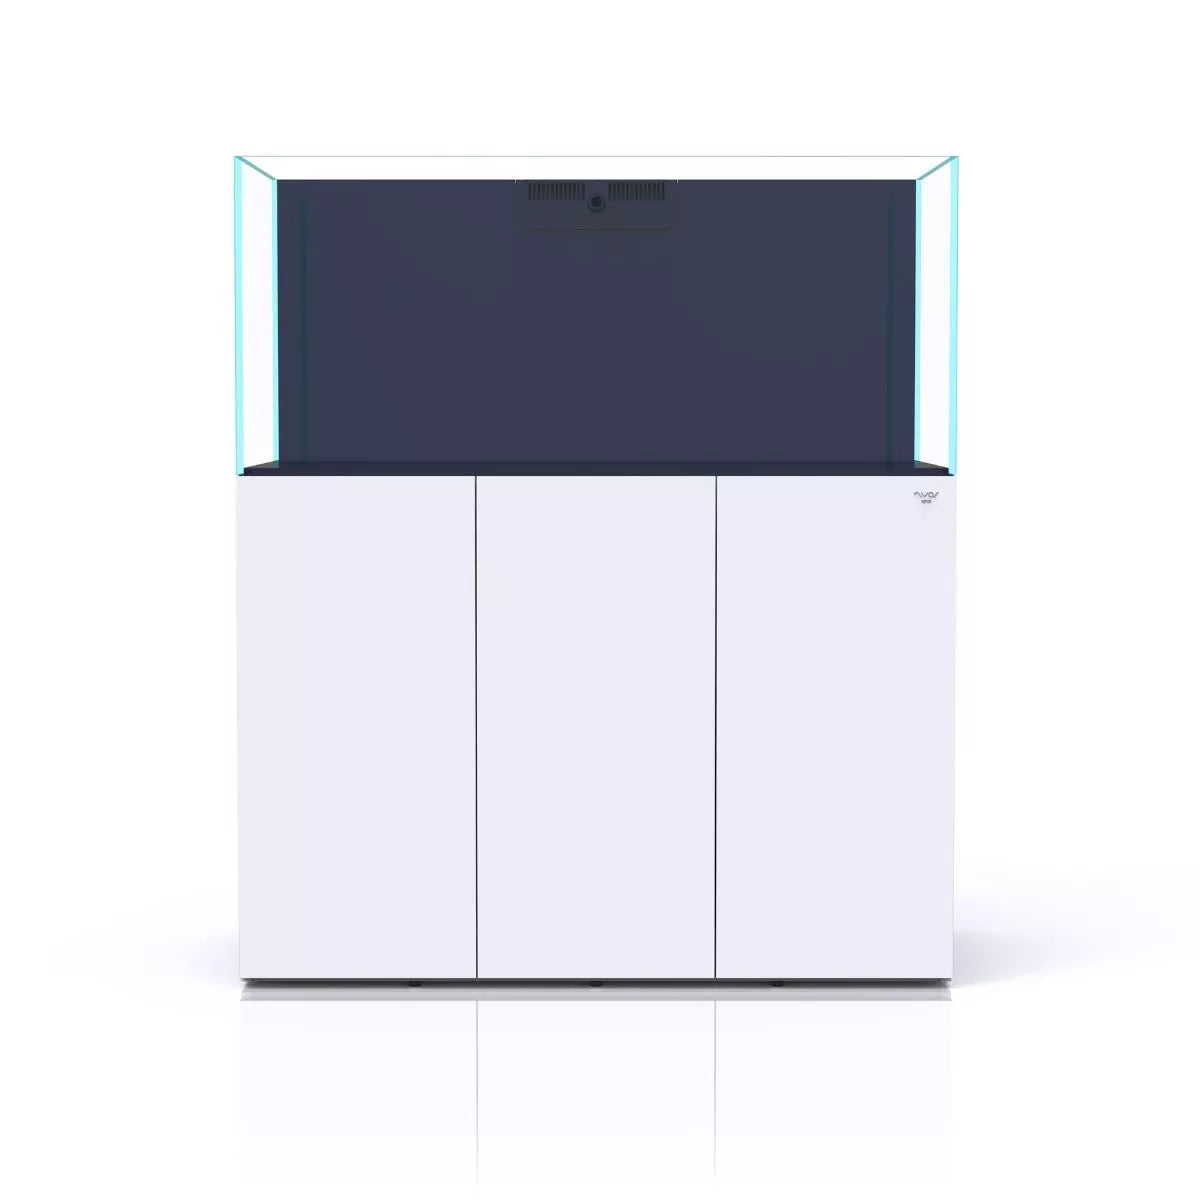 Nyos OPUS G2 440 Aquarium w/ Slim-Line Cabinet (White)